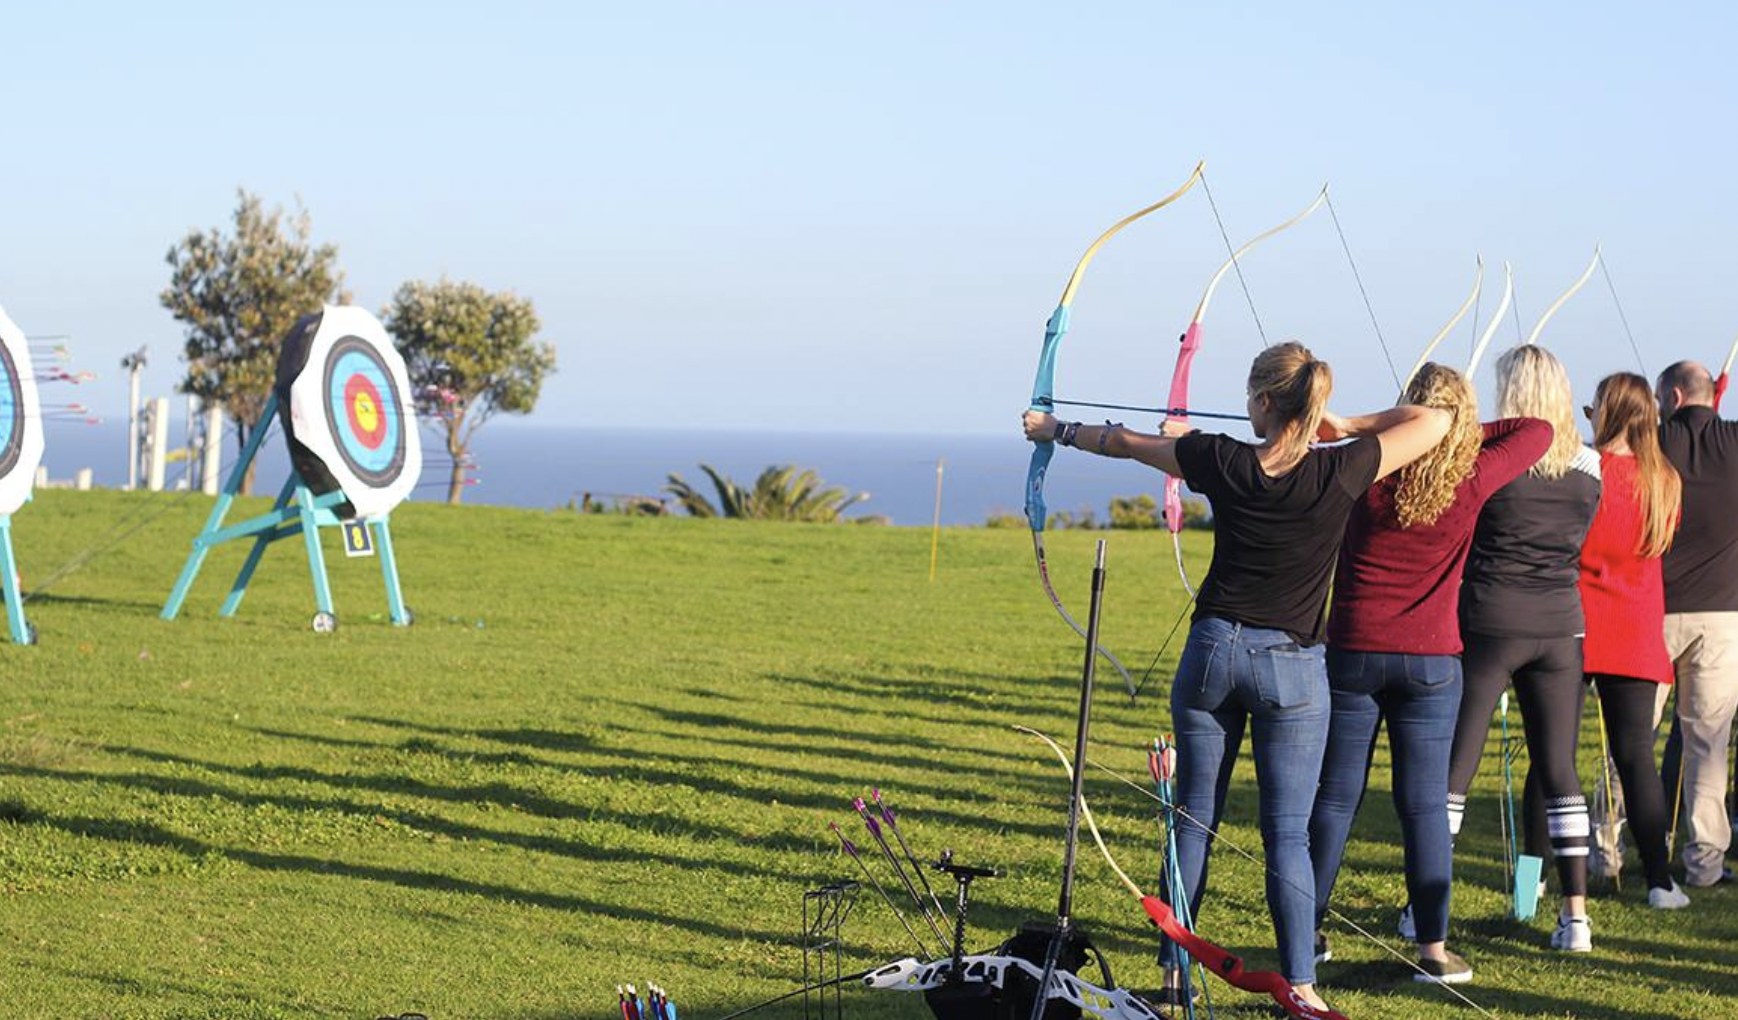 Sydney Archery